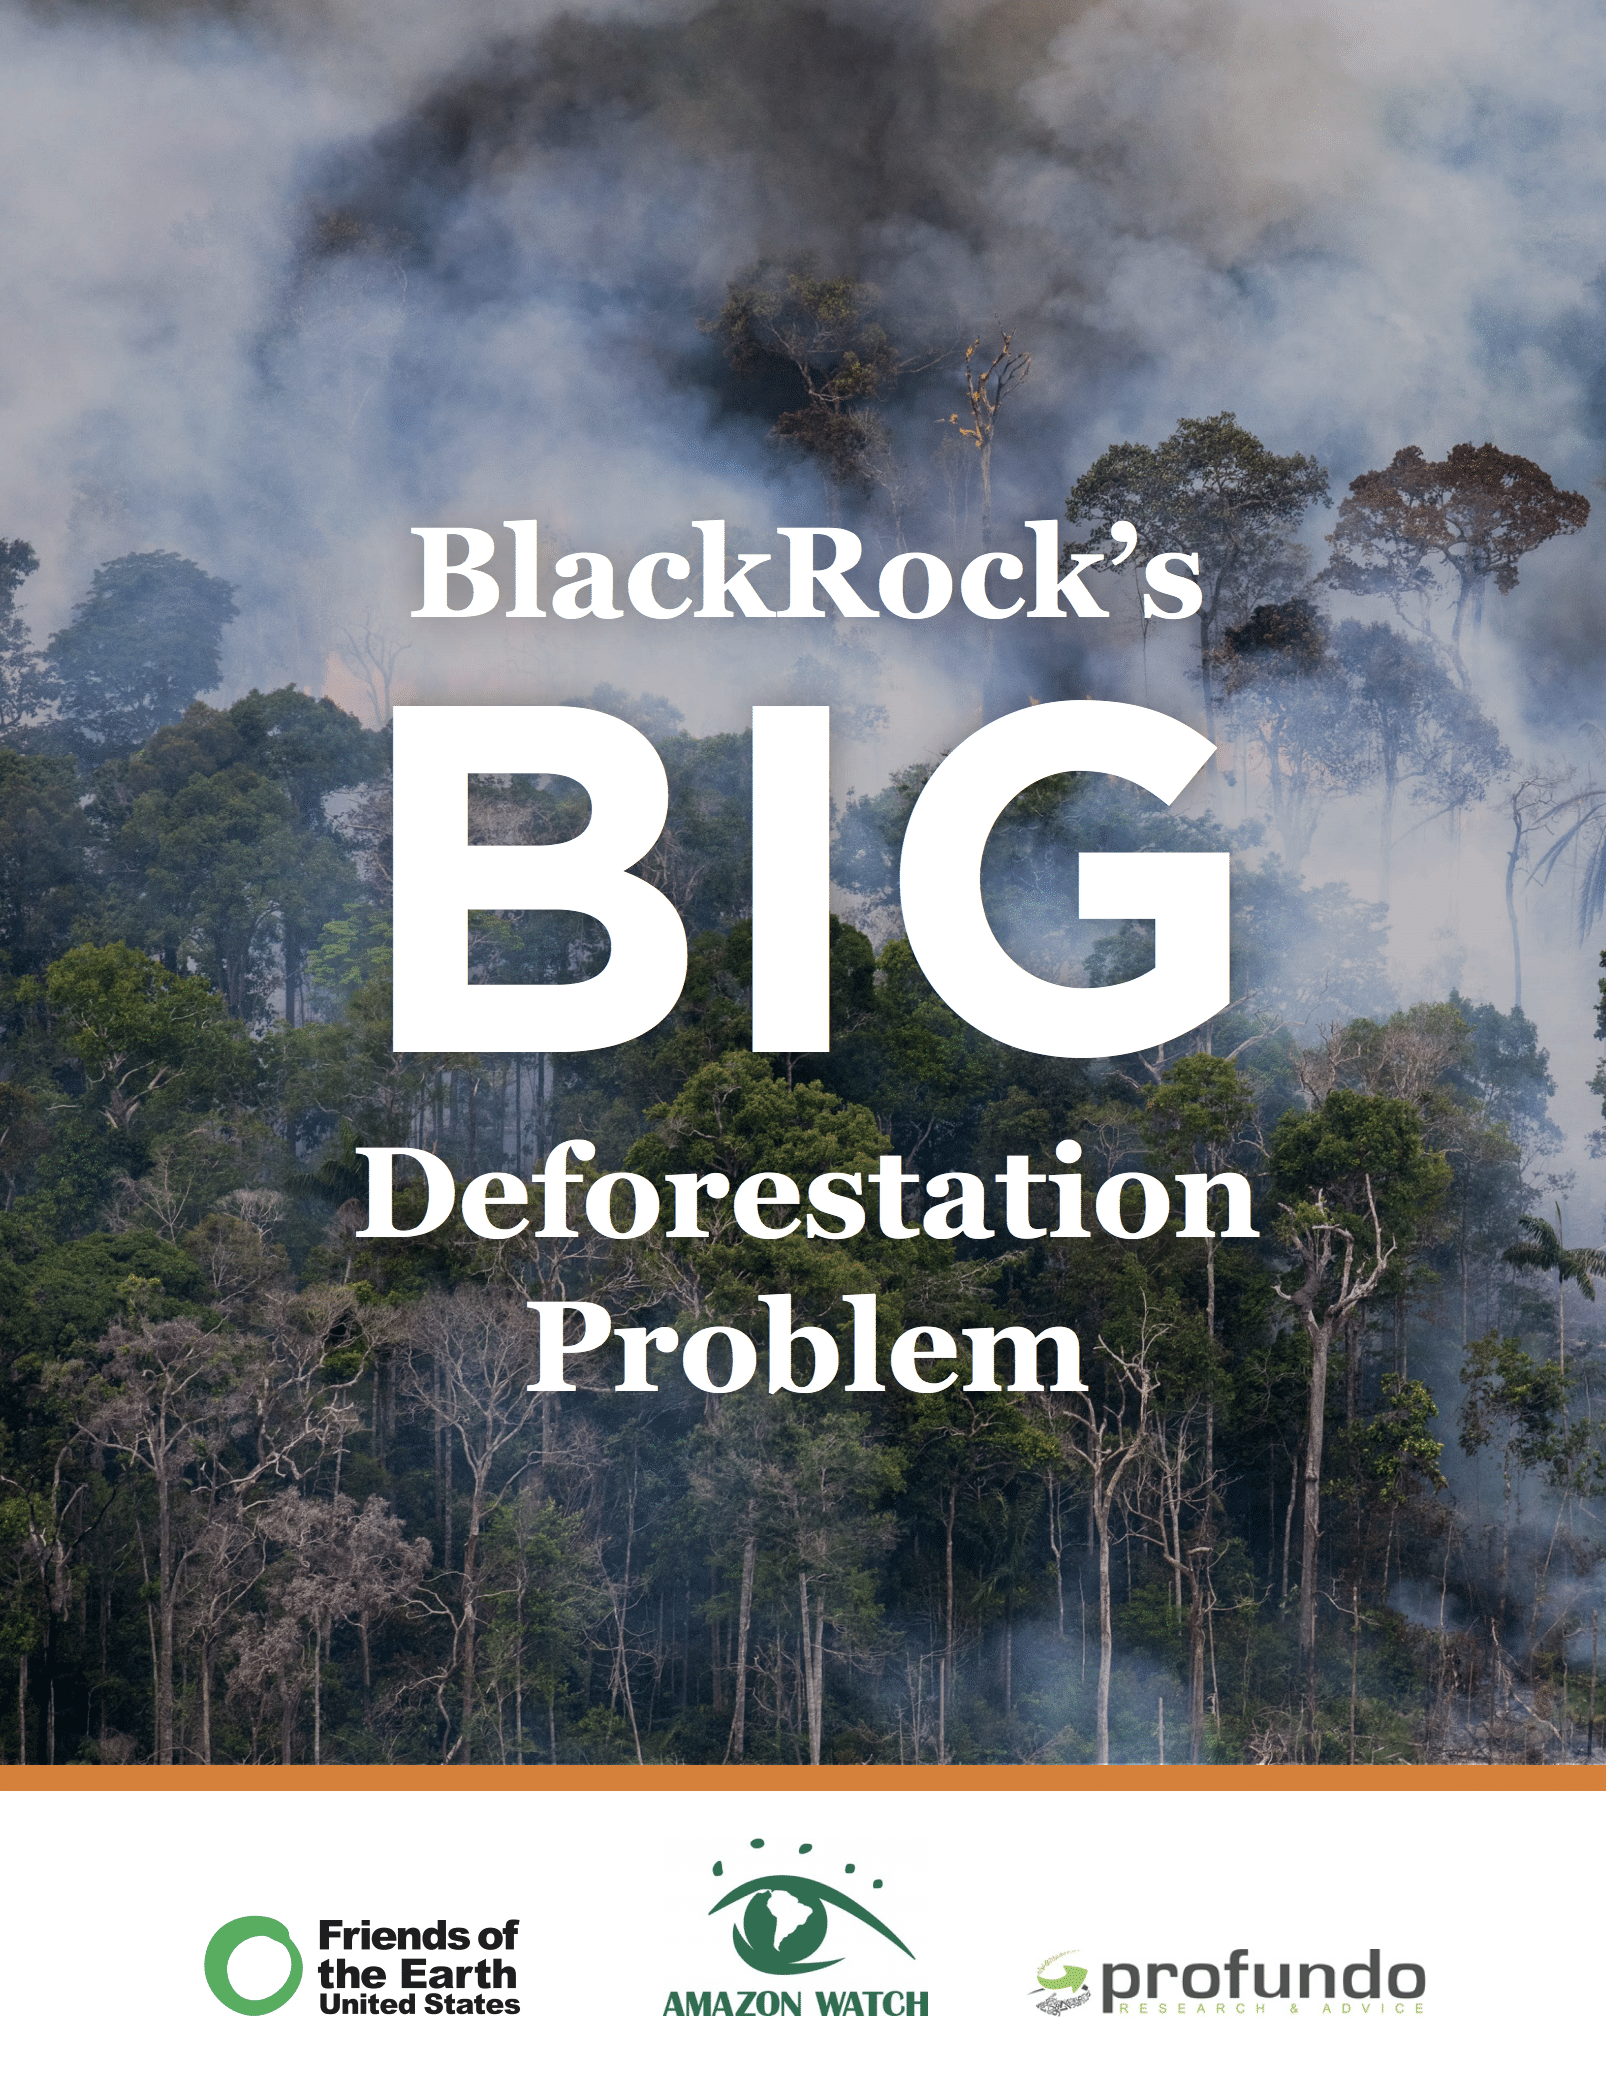 BlackRock’s Big Deforestation Problem